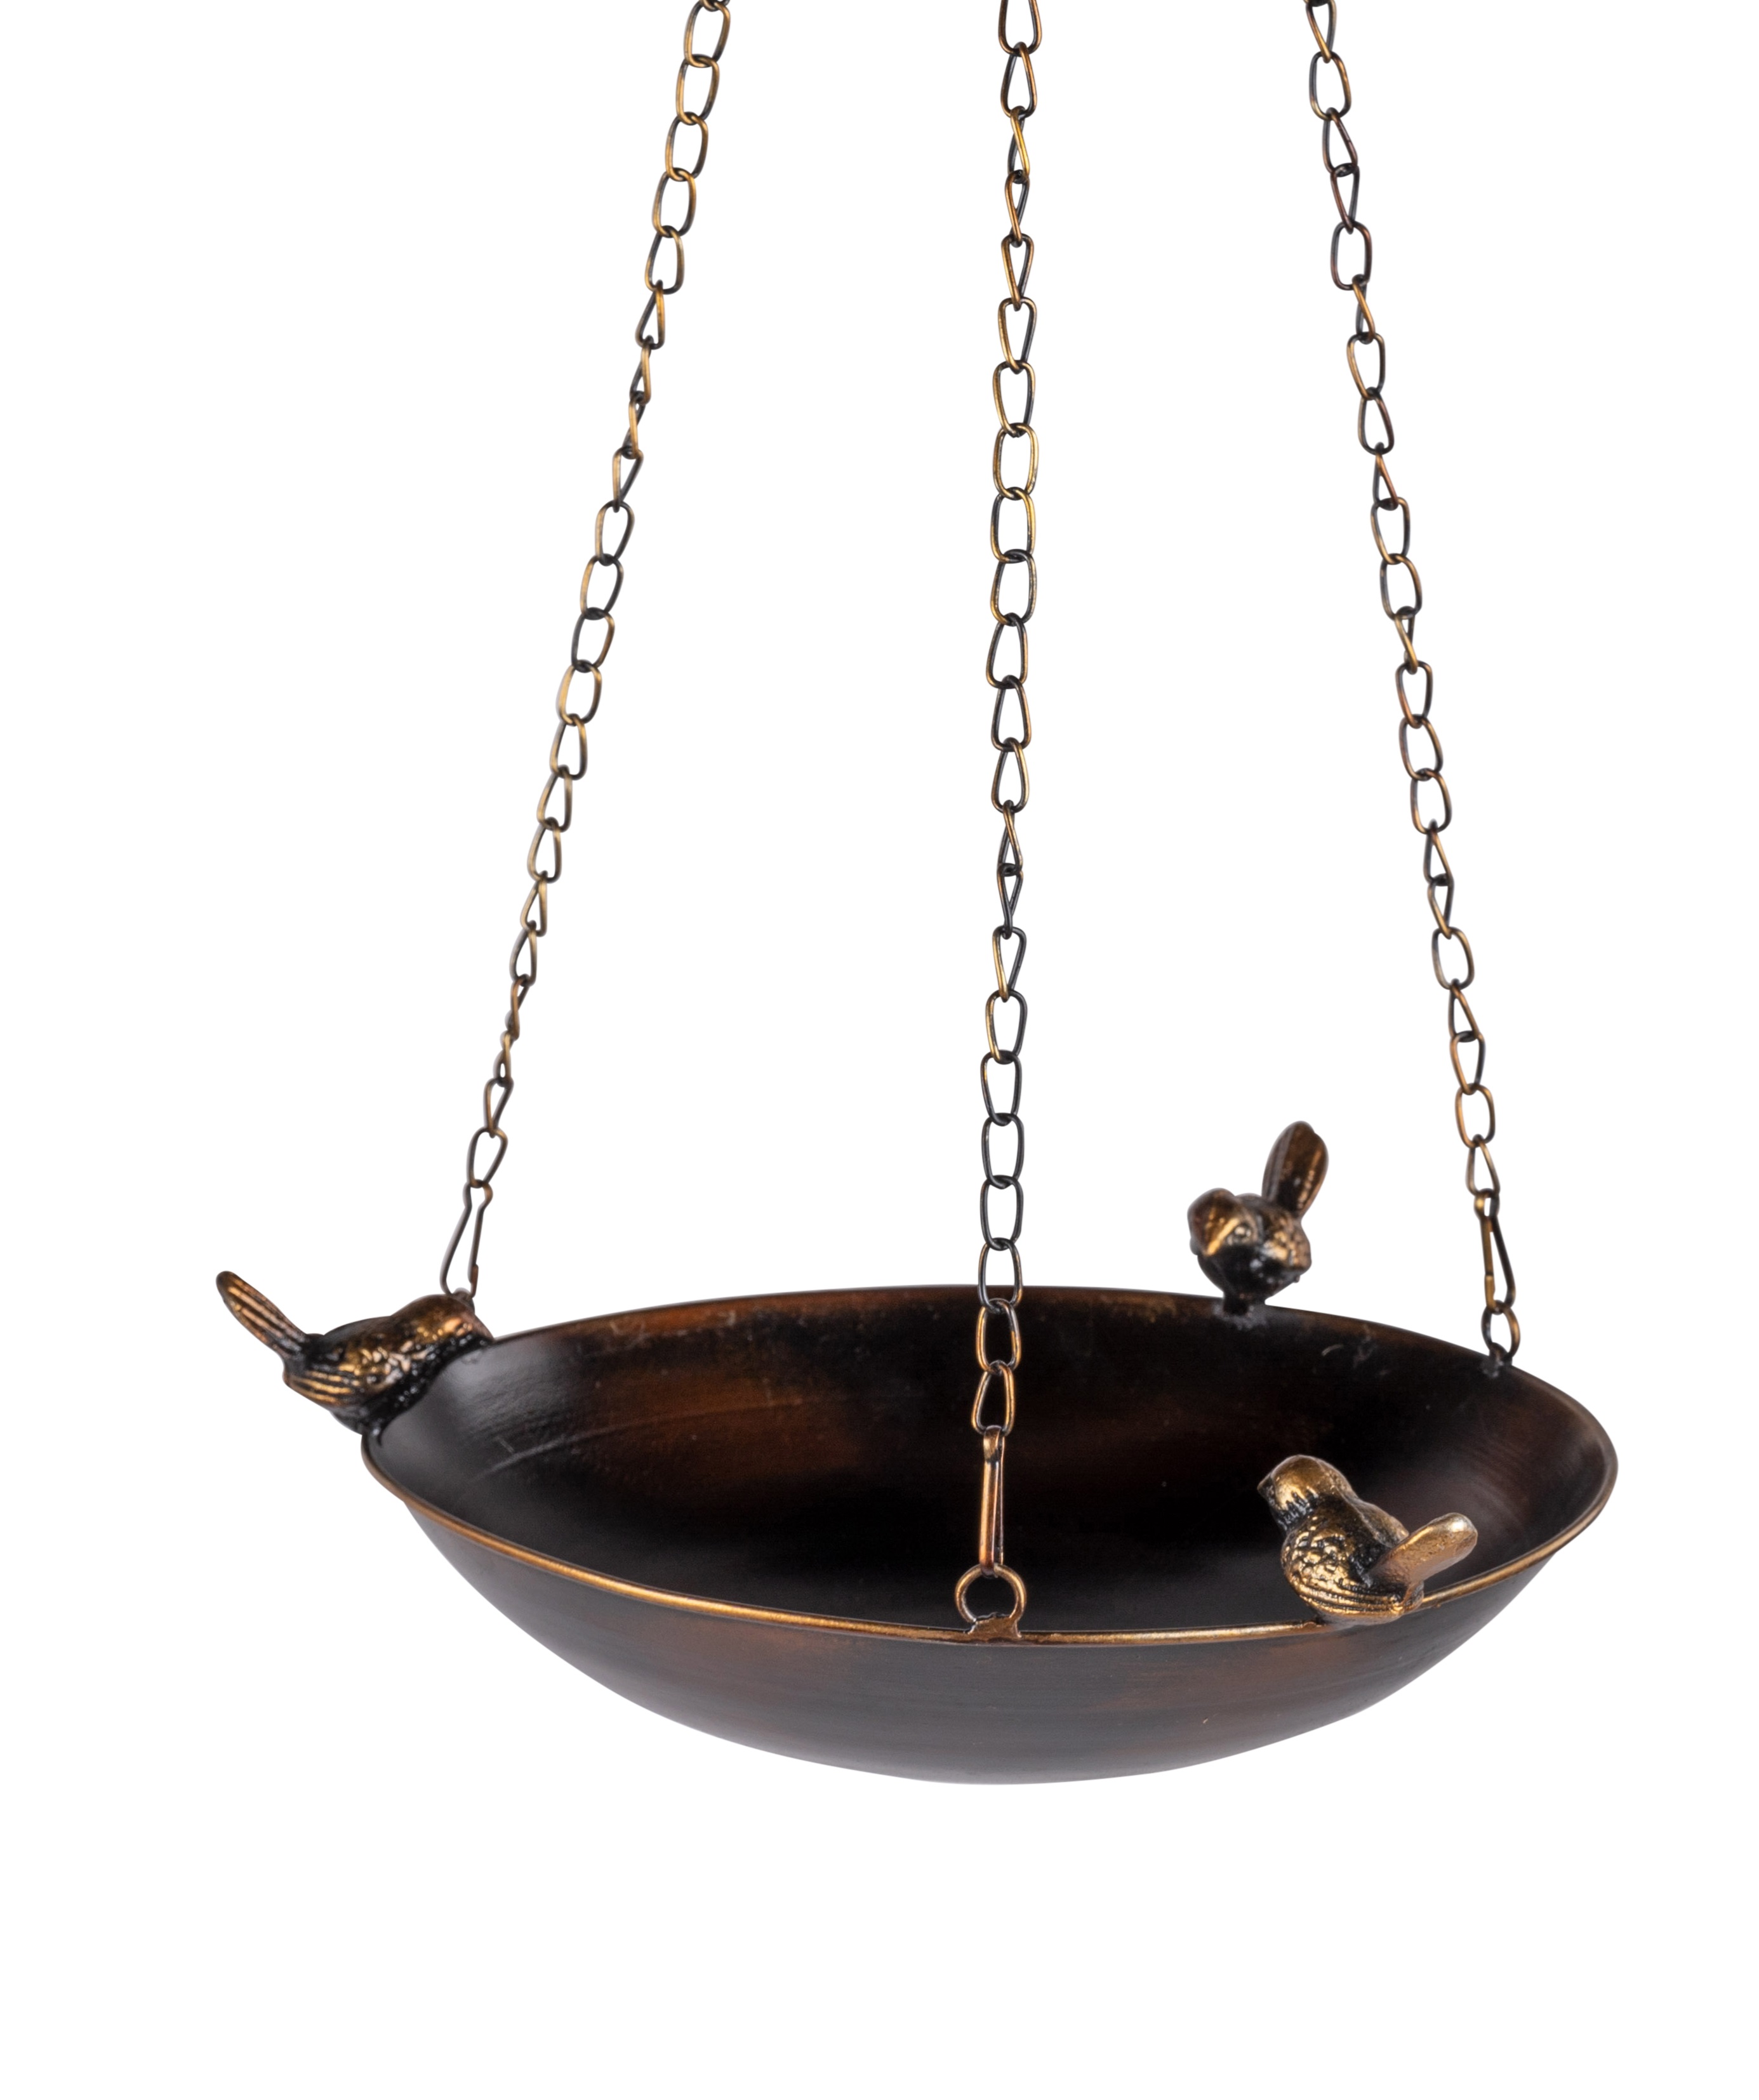 Vogeltränke L.70cm zum aufhängen antik braun gold  aus Metall Gartendeko Formano